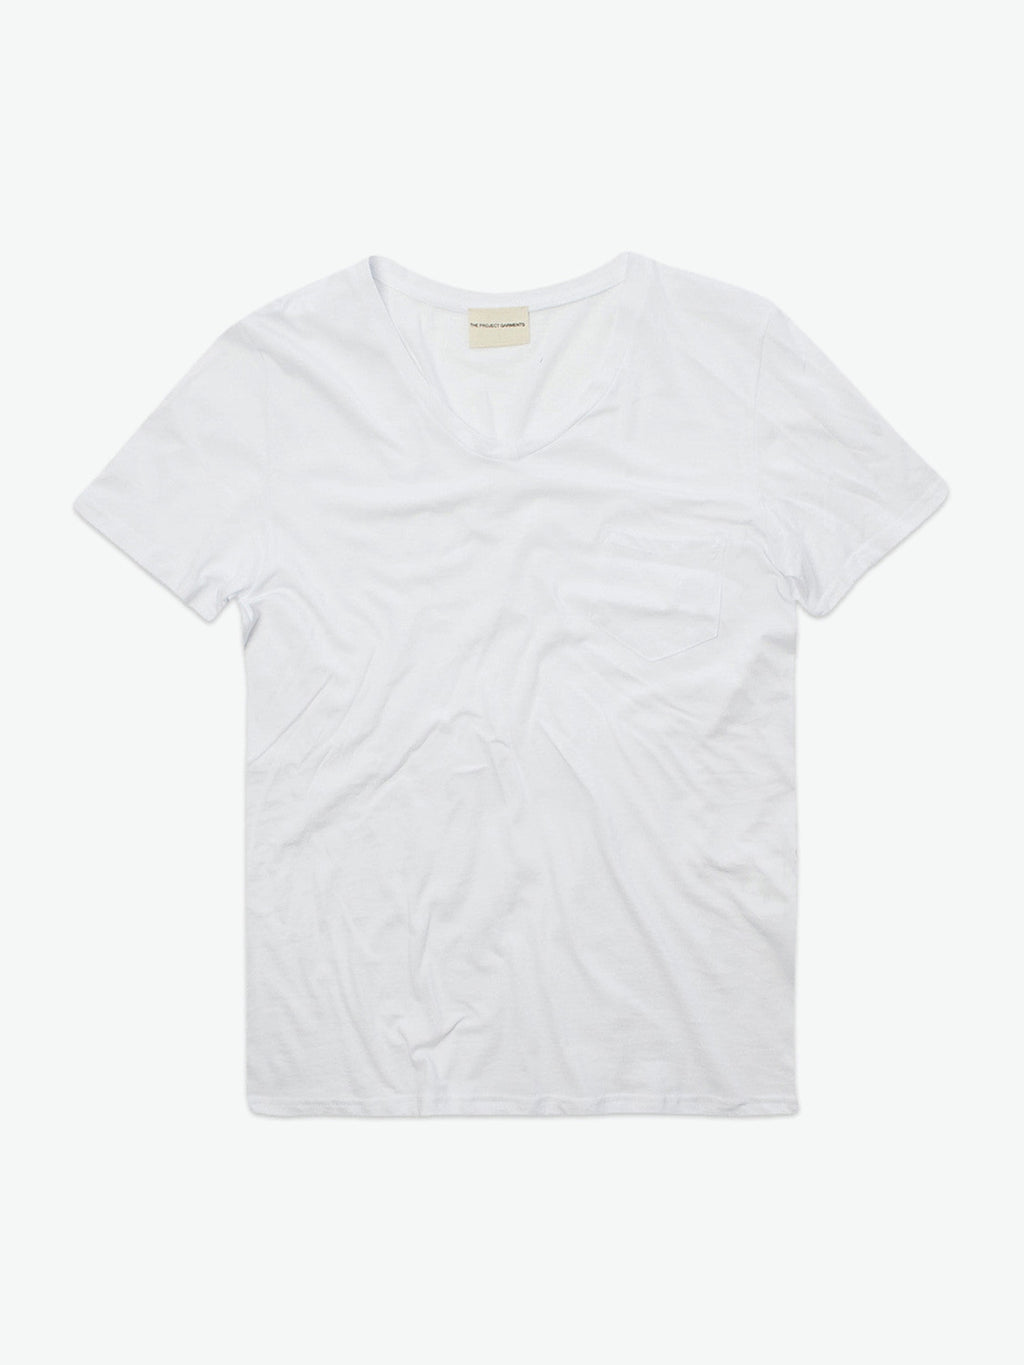 Modal Blend V-neck Pocket T-shirt White | A